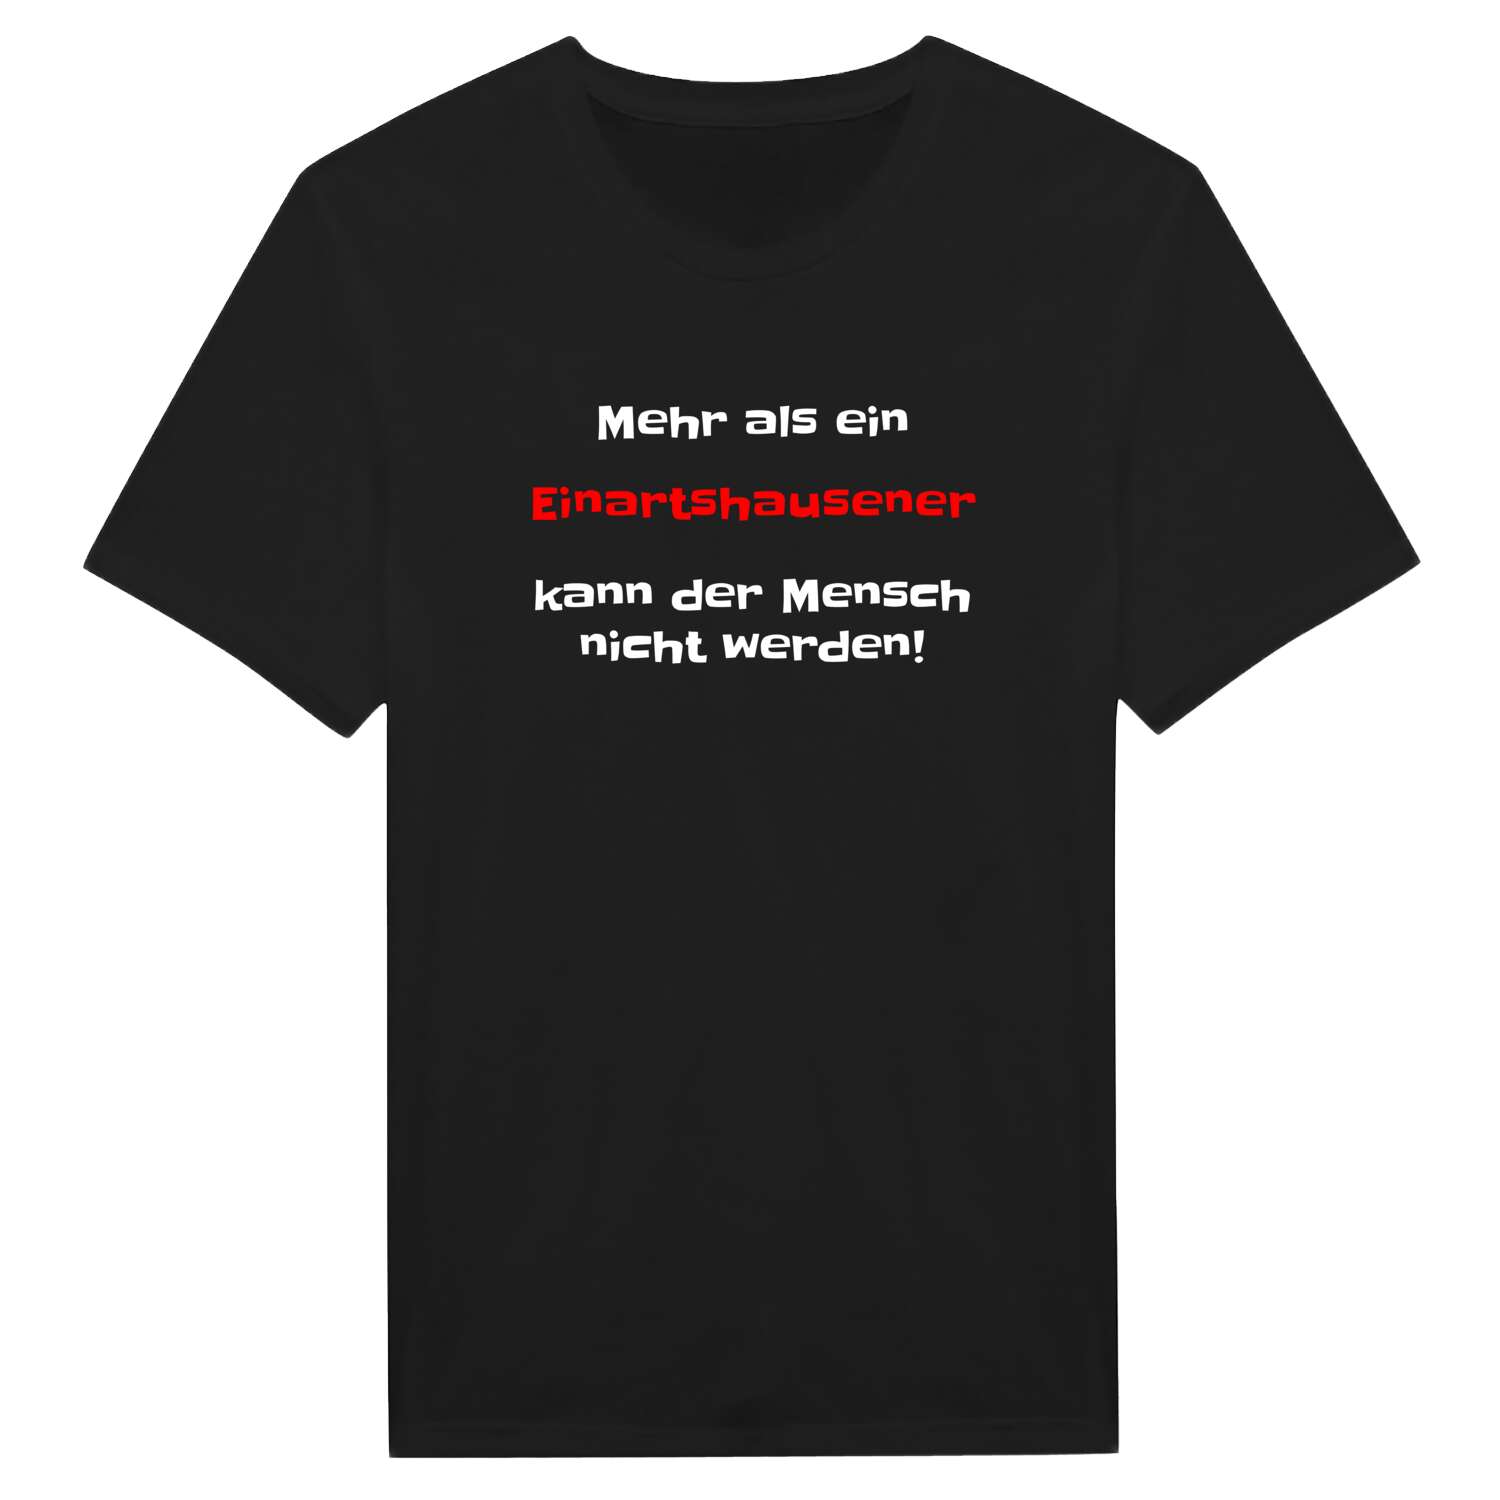 Einartshausen T-Shirt »Mehr als ein«